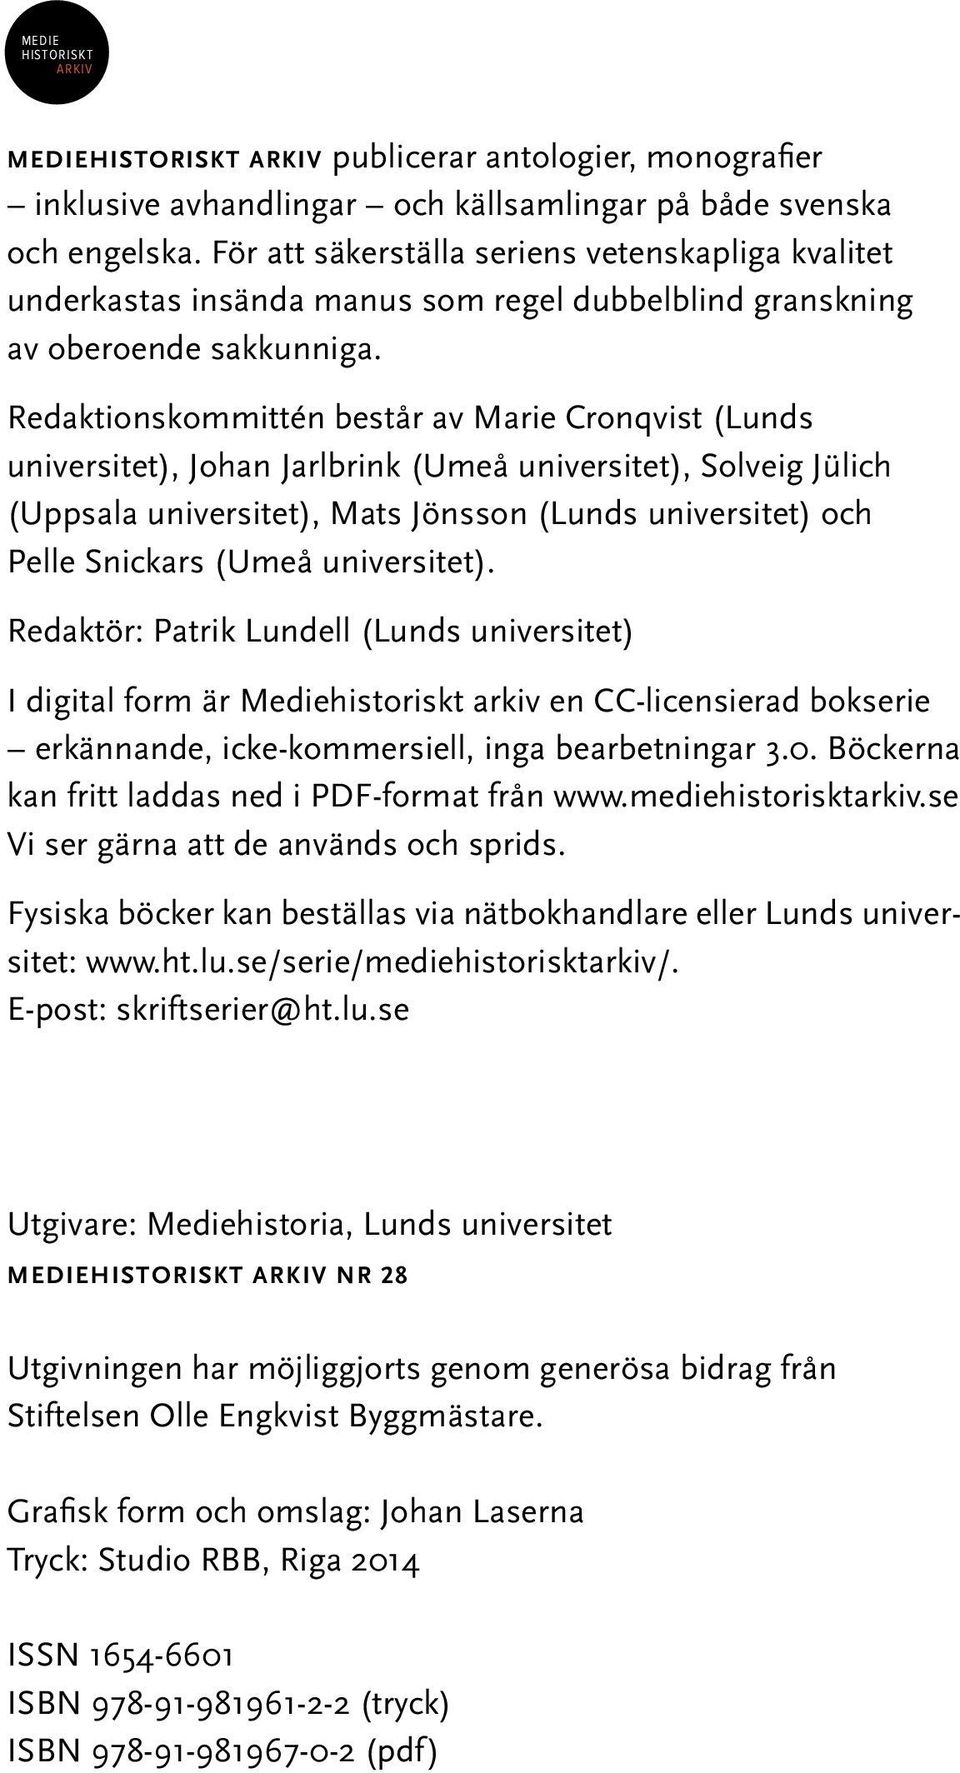 Redaktionskommittén består av Marie Cronqvist (Lunds universitet), Johan Jarlbrink (Umeå universitet), Solveig Jülich (Uppsala universitet), Mats Jönsson (Lunds universitet) och Pelle Snickars (Umeå